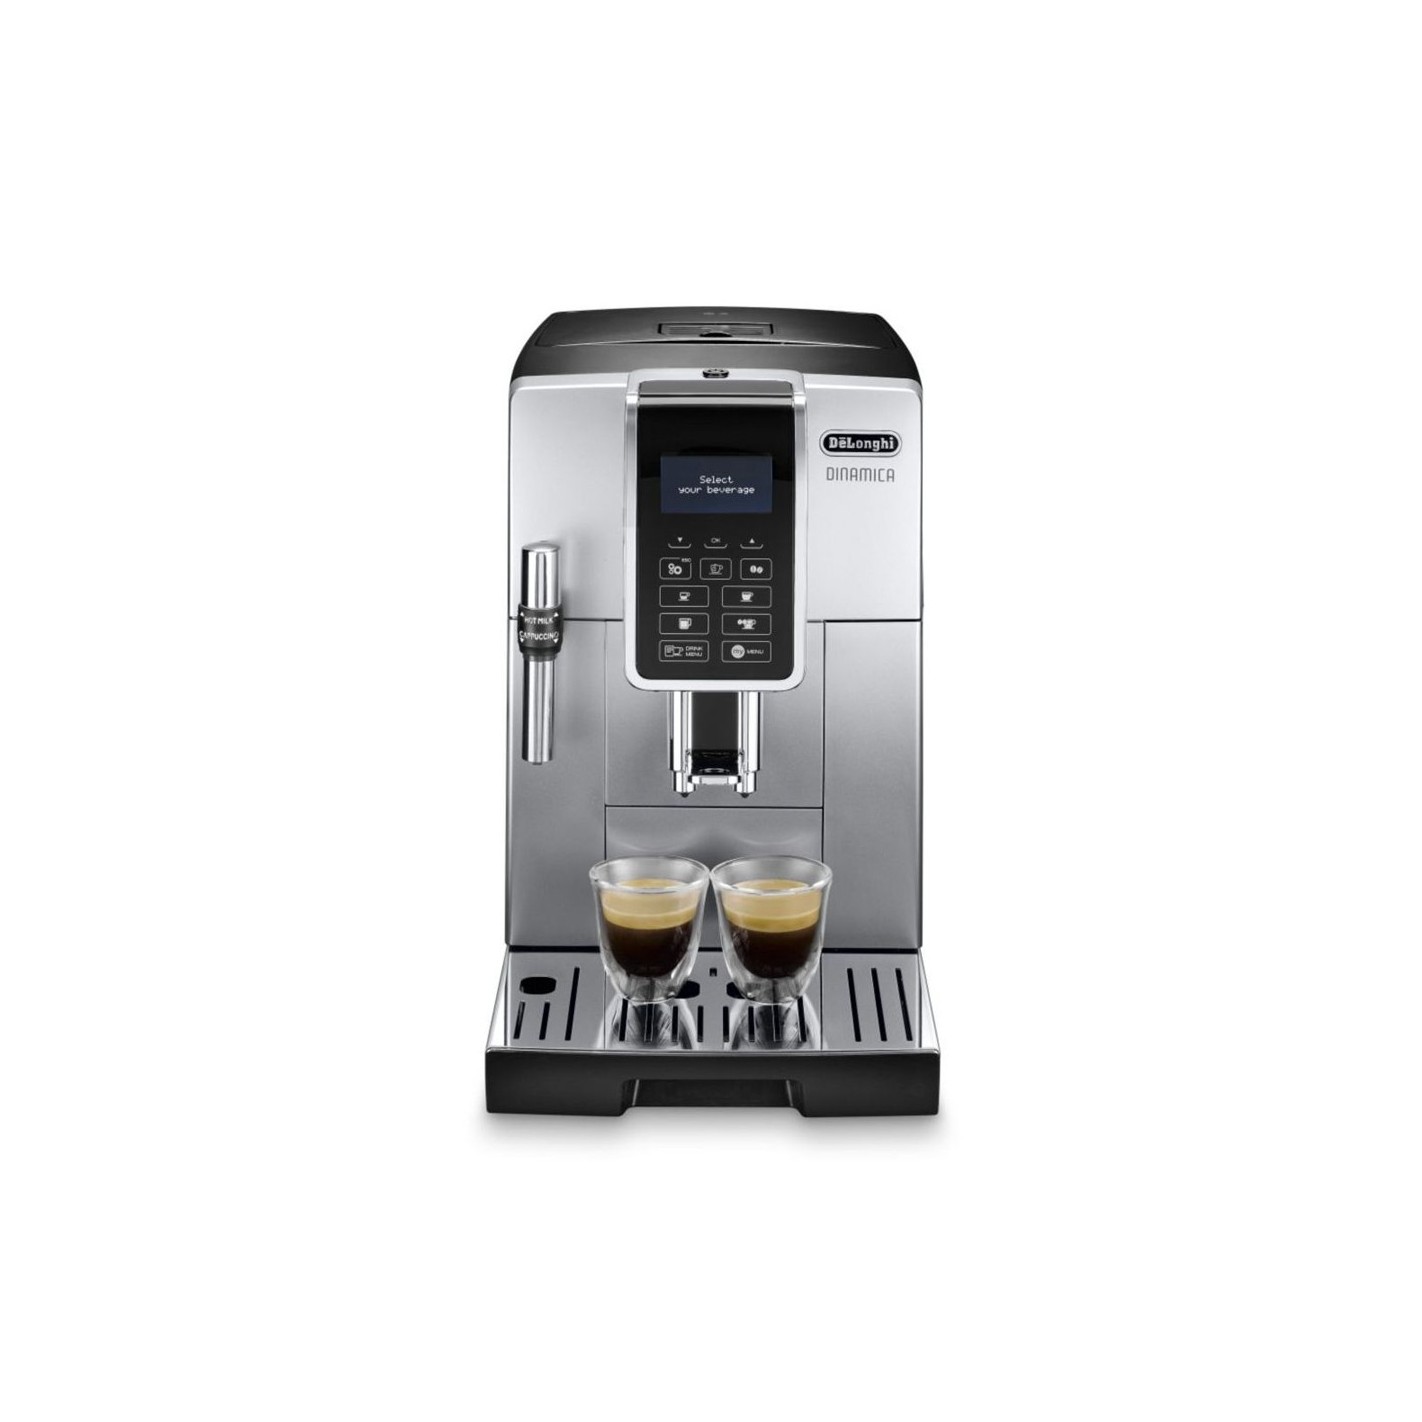 DeLonghi - 12 Détartrant EcoDecalk pour machine à café grain  professionnelle 10